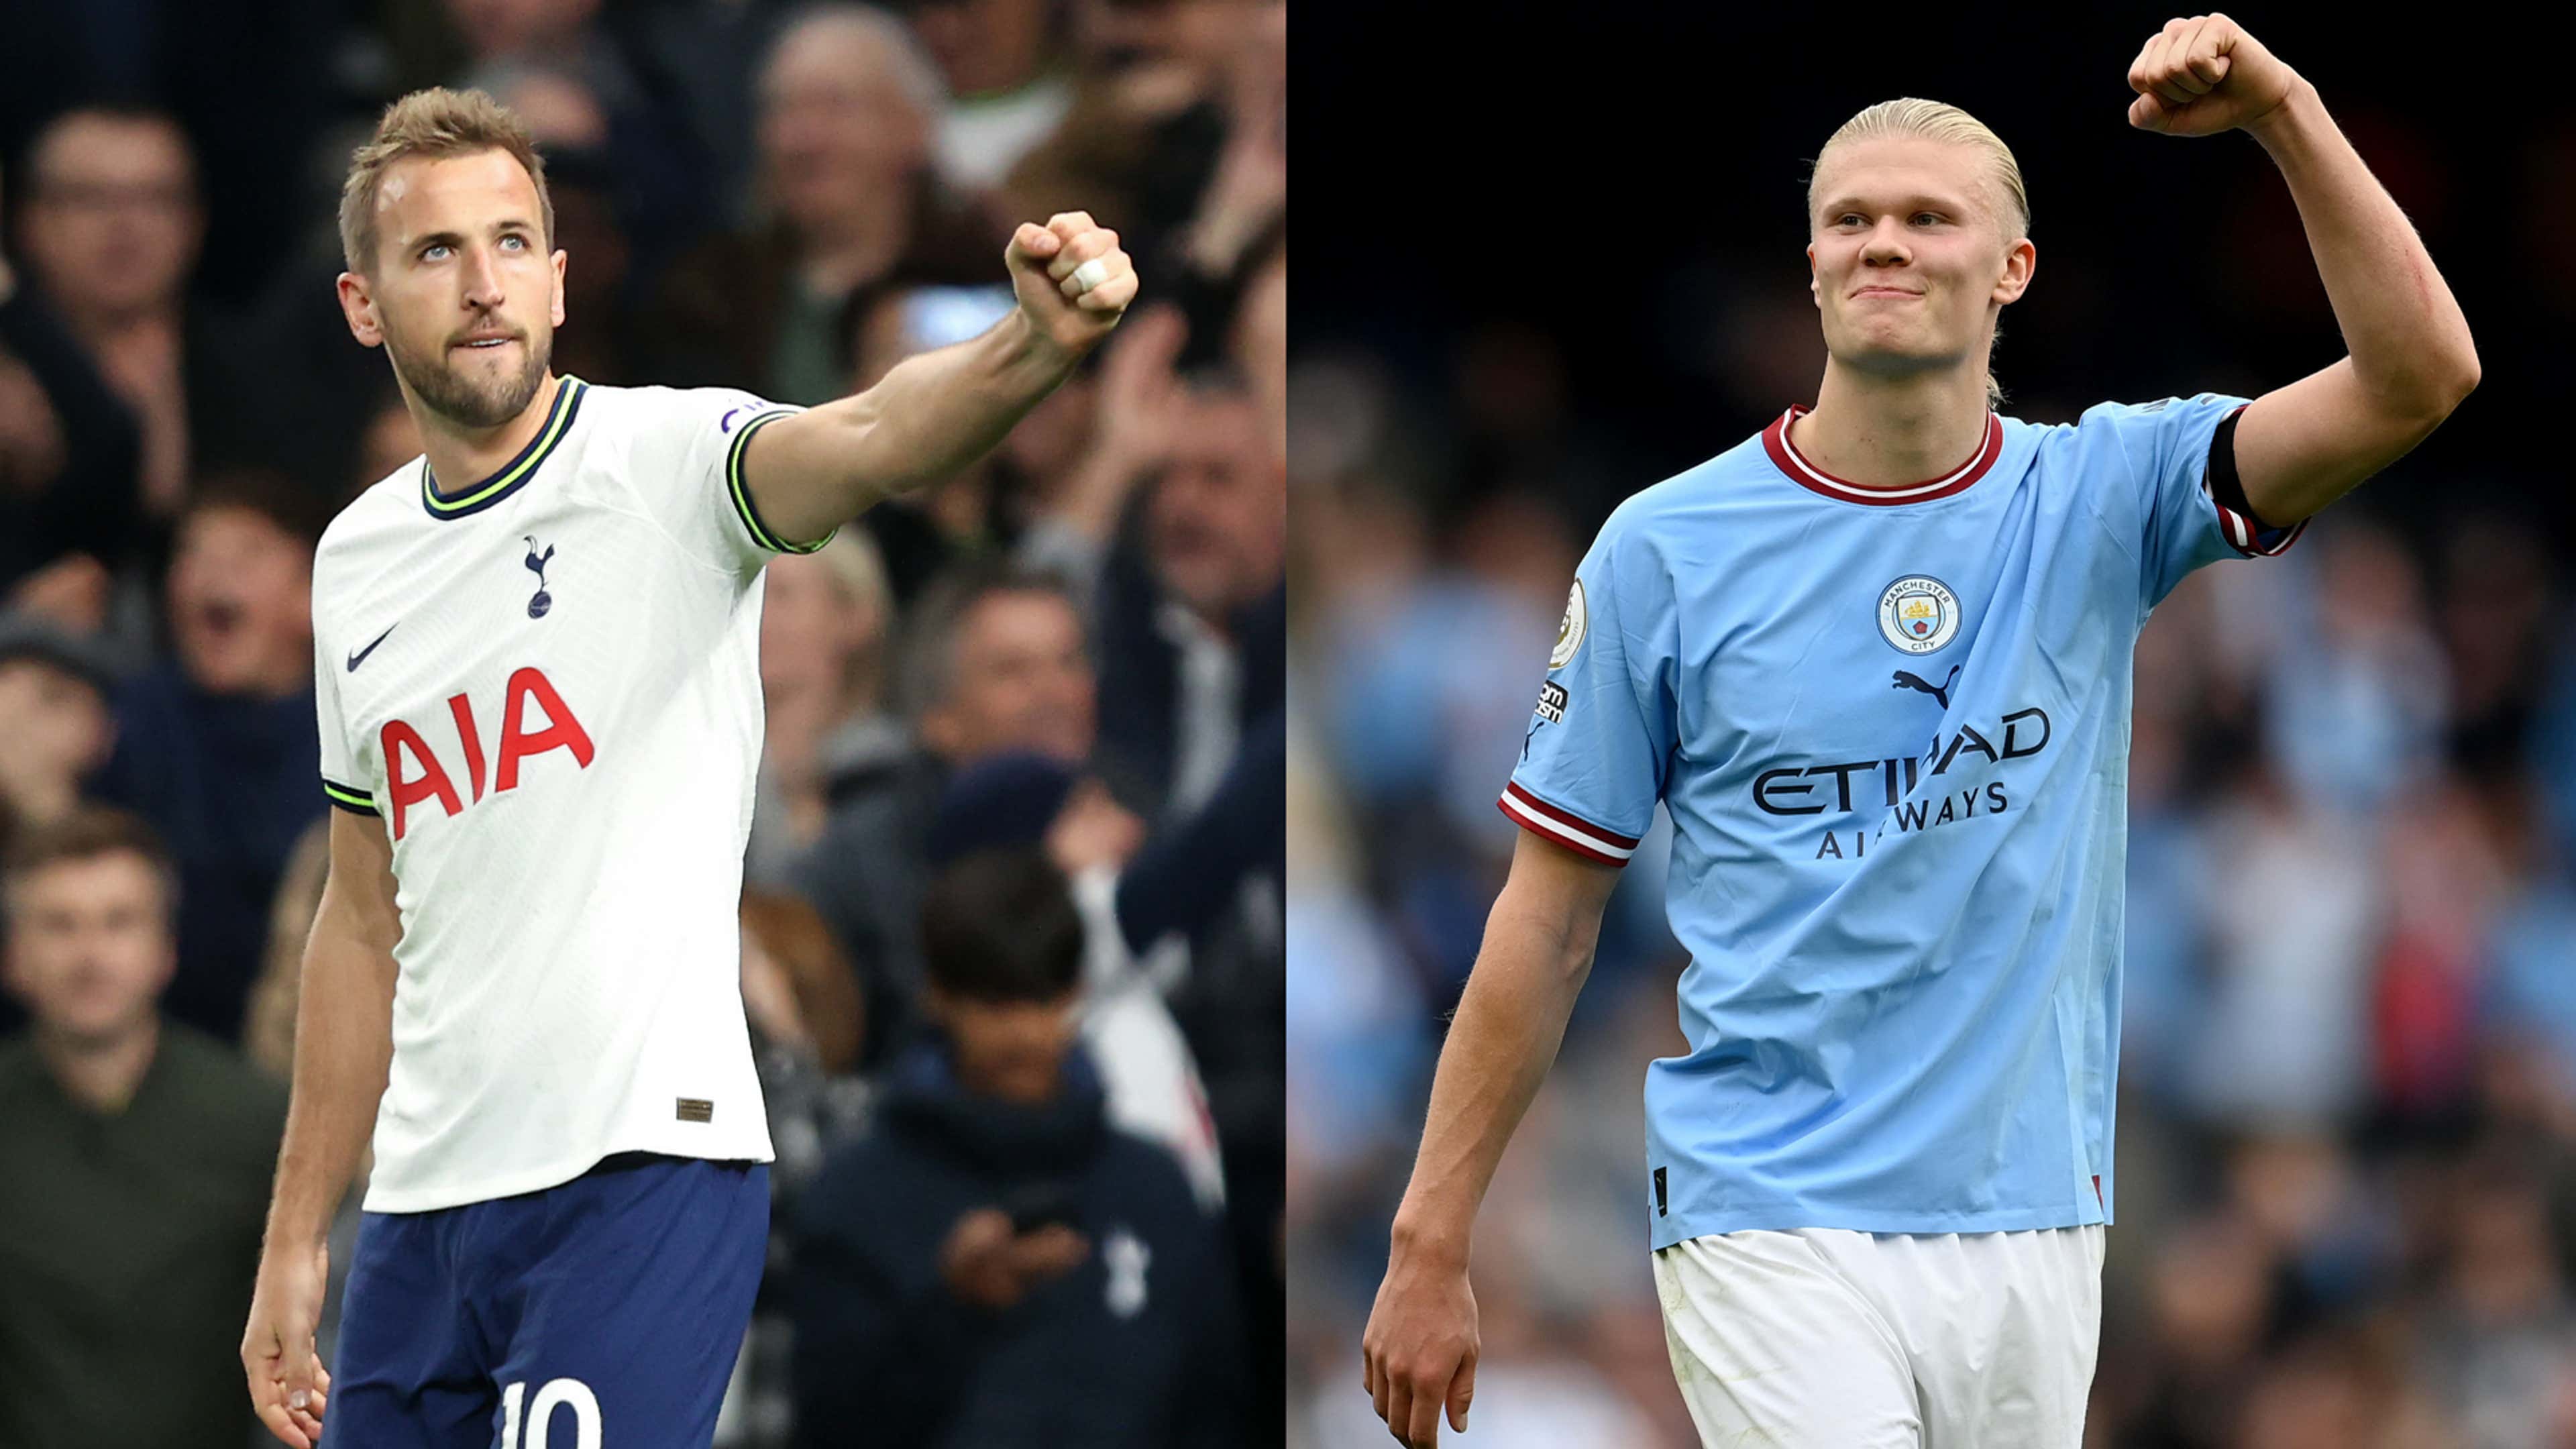 Manchester City cede empate ao Tottenham e cai para o 3º lugar do  Campeonato Inglês • Blog do Anderson Souza